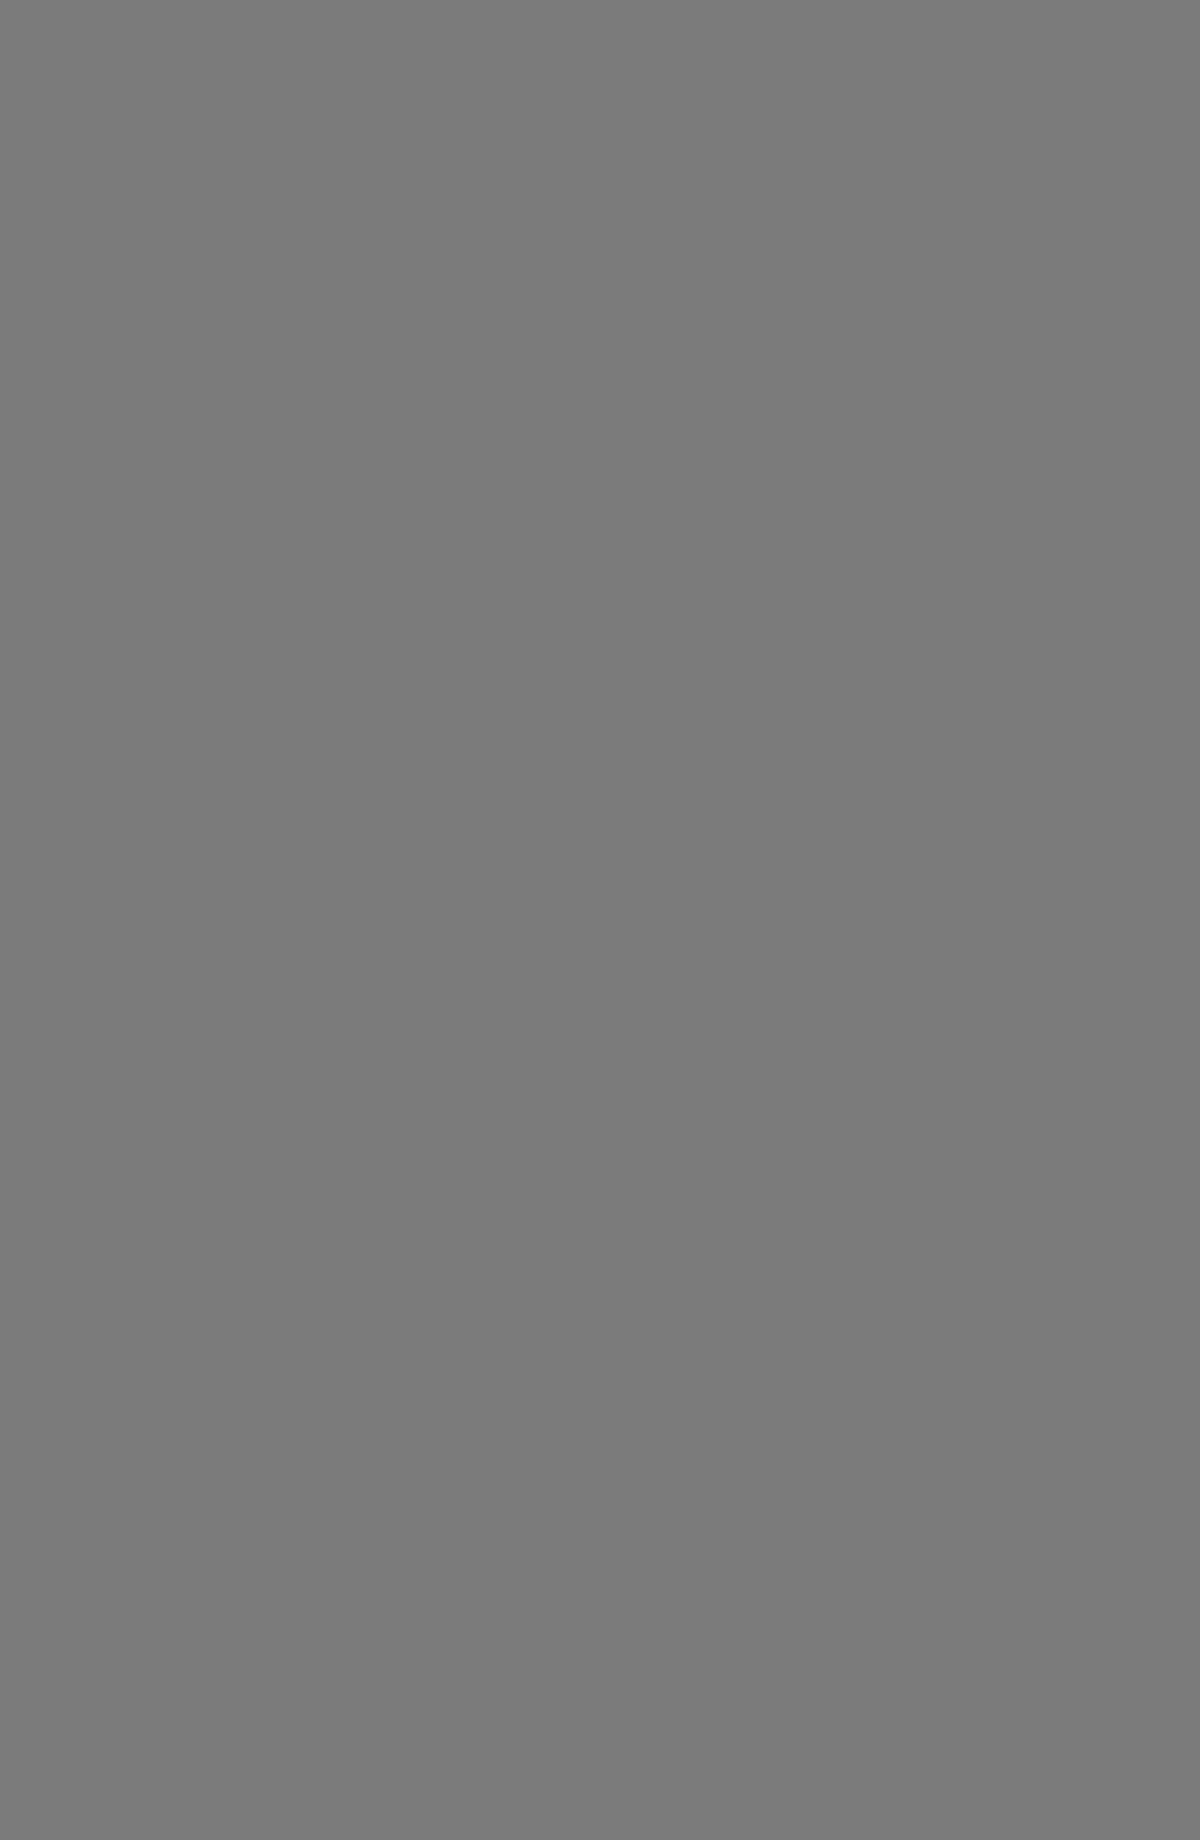 Лиля Брик и Владимир Маяковский. Кадр из фильма «Закованная фильмой». 1918 год. Фотография: e-reading.club